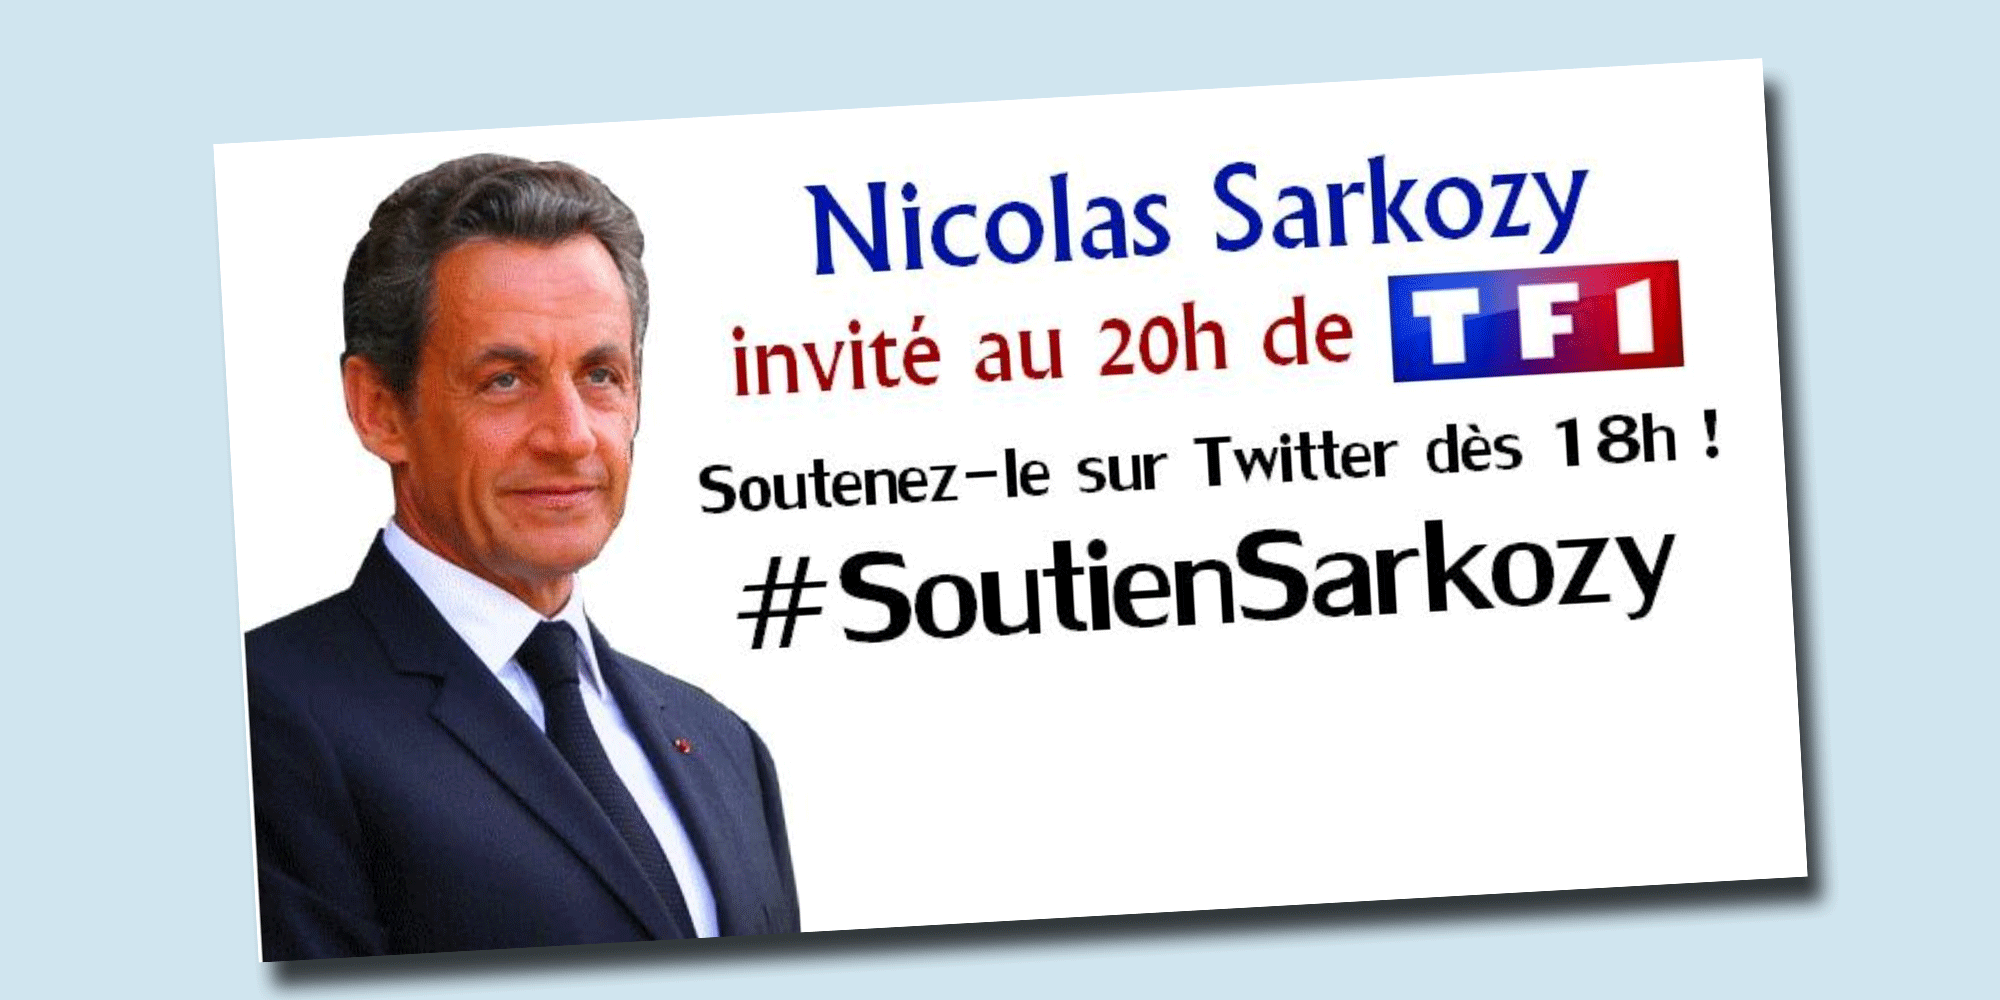 Appel à soutenir Nicolas Sarkozy publié hier sur Twitter. [Twitter]